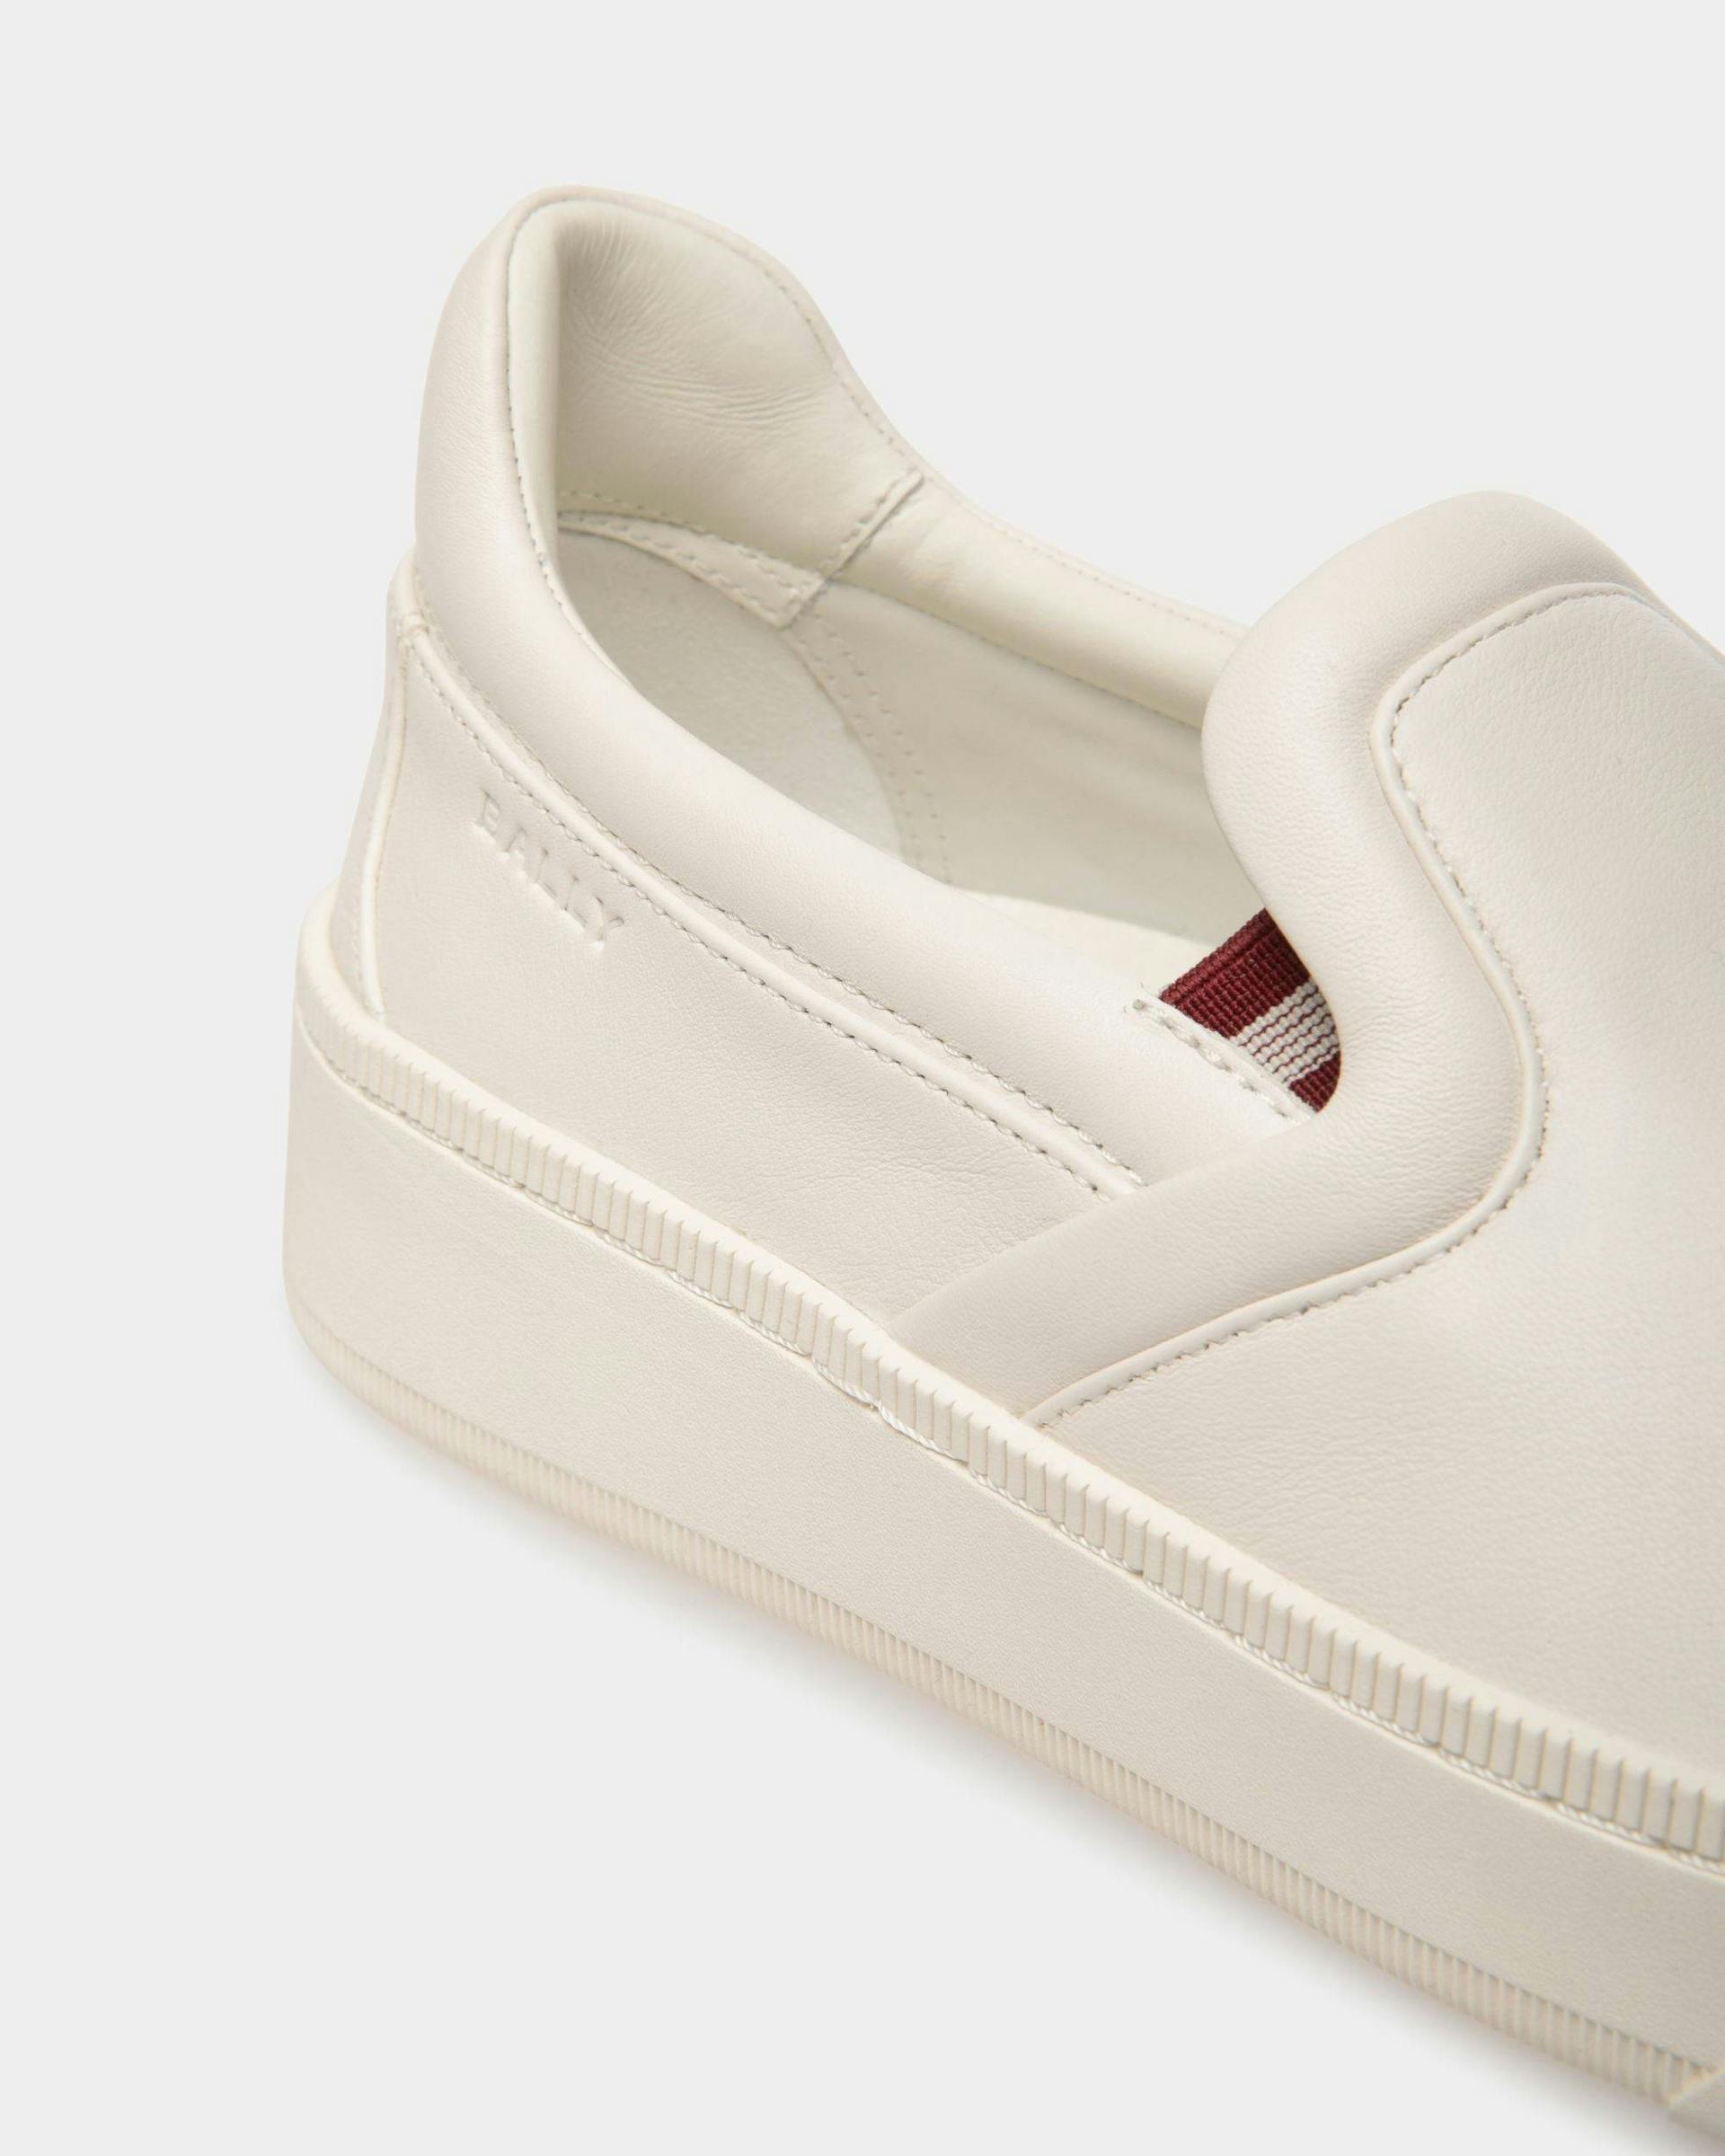 Women's Raise Sneaker In White Leather | Bally | Still Life Detail